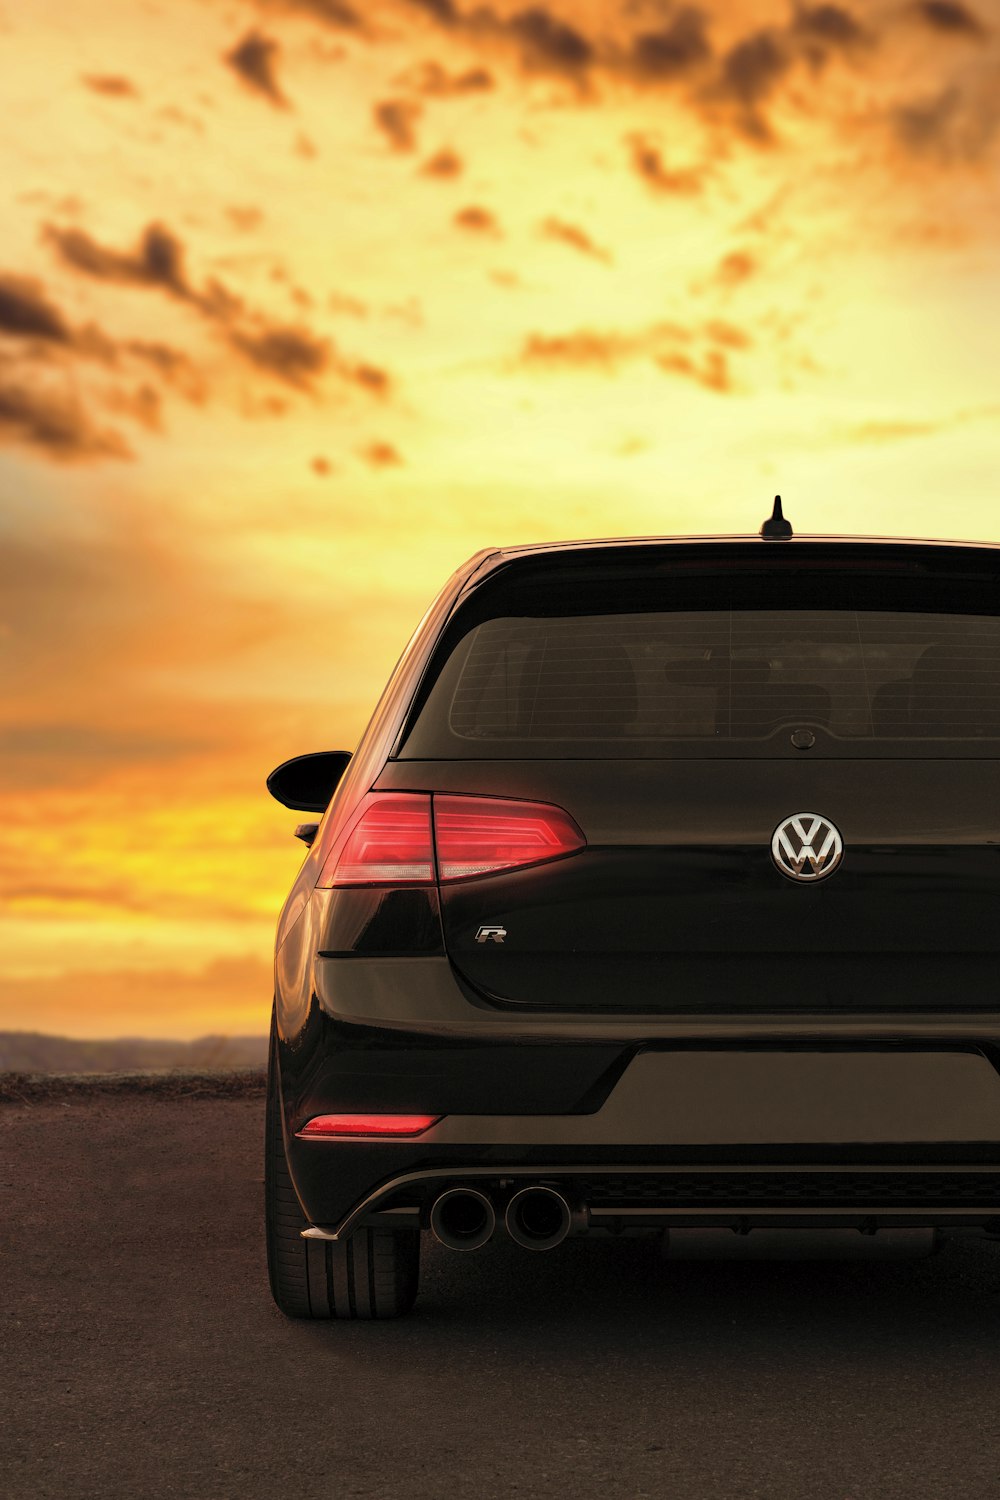 Volkswagen: Bạn đang tìm kiếm một chiếc xe đẳng cấp với thiết kế độc đáo và hiệu suất tuyệt vời? Xem ngay hình ảnh liên quan đến Volkswagen và khám phá sự hoàn hảo của những chiếc xe này.